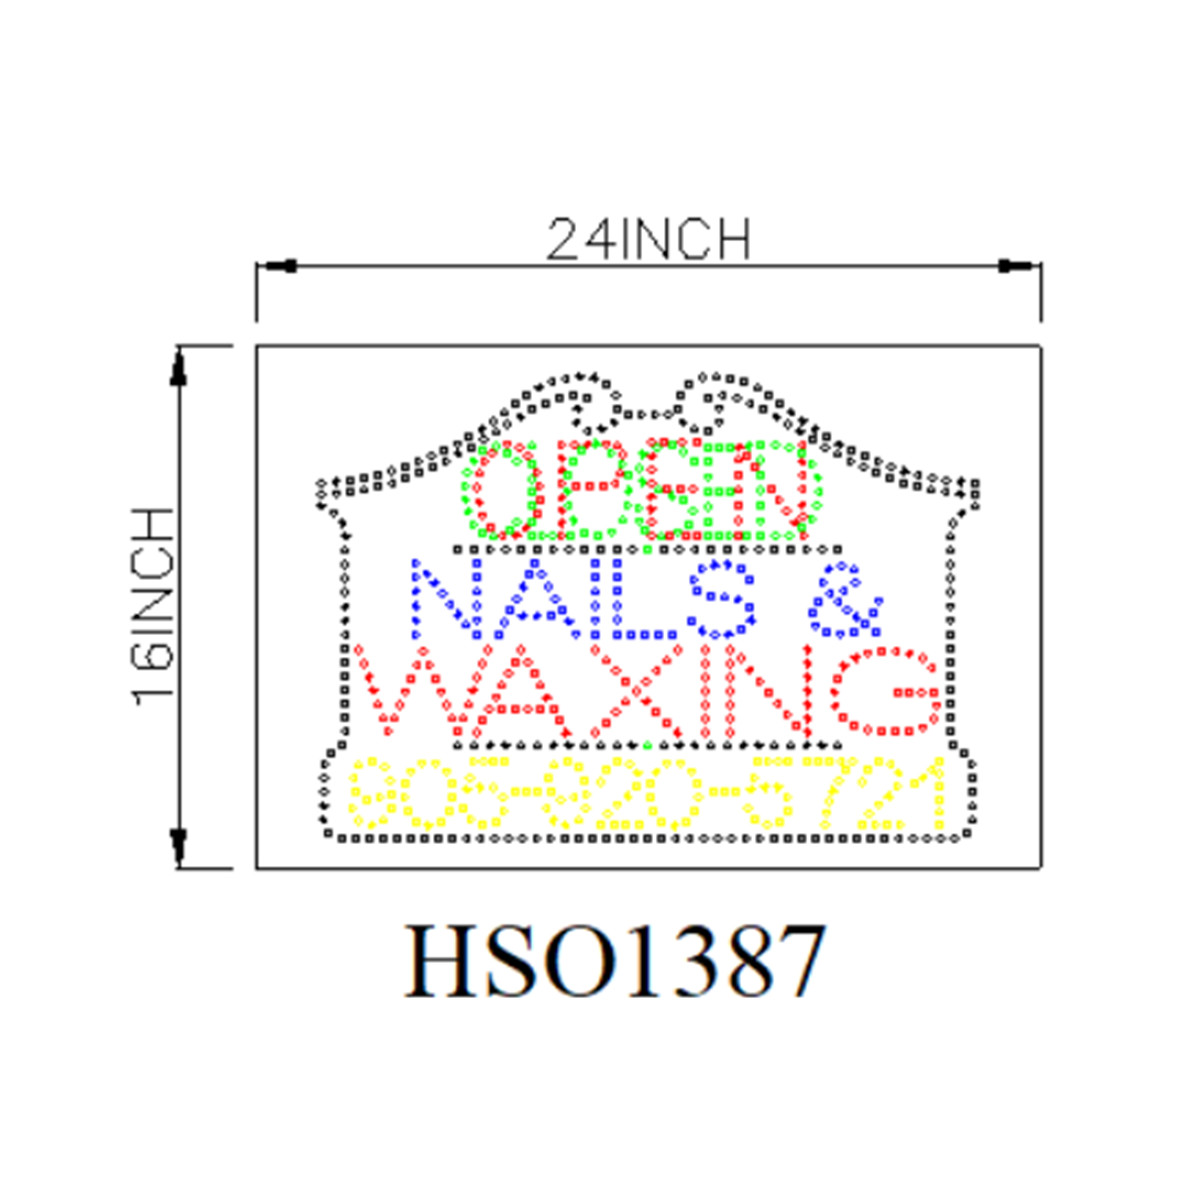 nails waxing LED sign